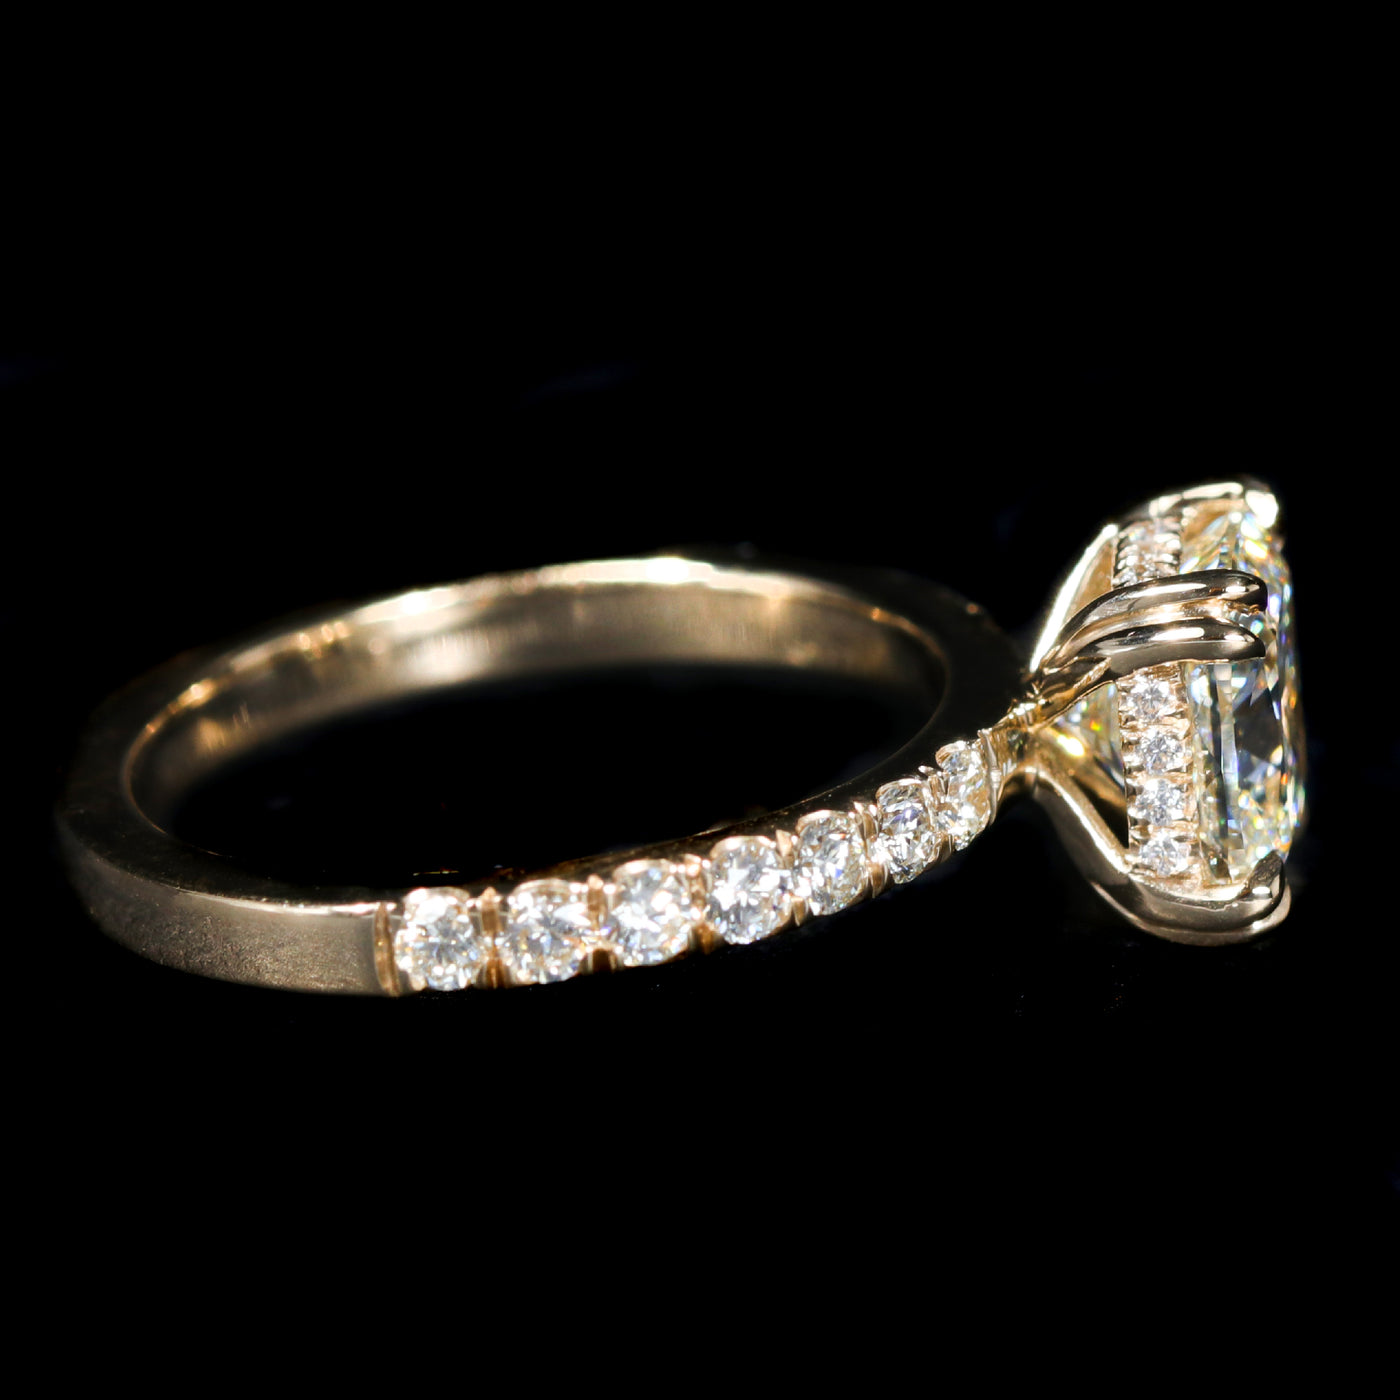 14K Yellow Gold GIA 2.01 Carat Cushion Cut Diamond Engagement Ring